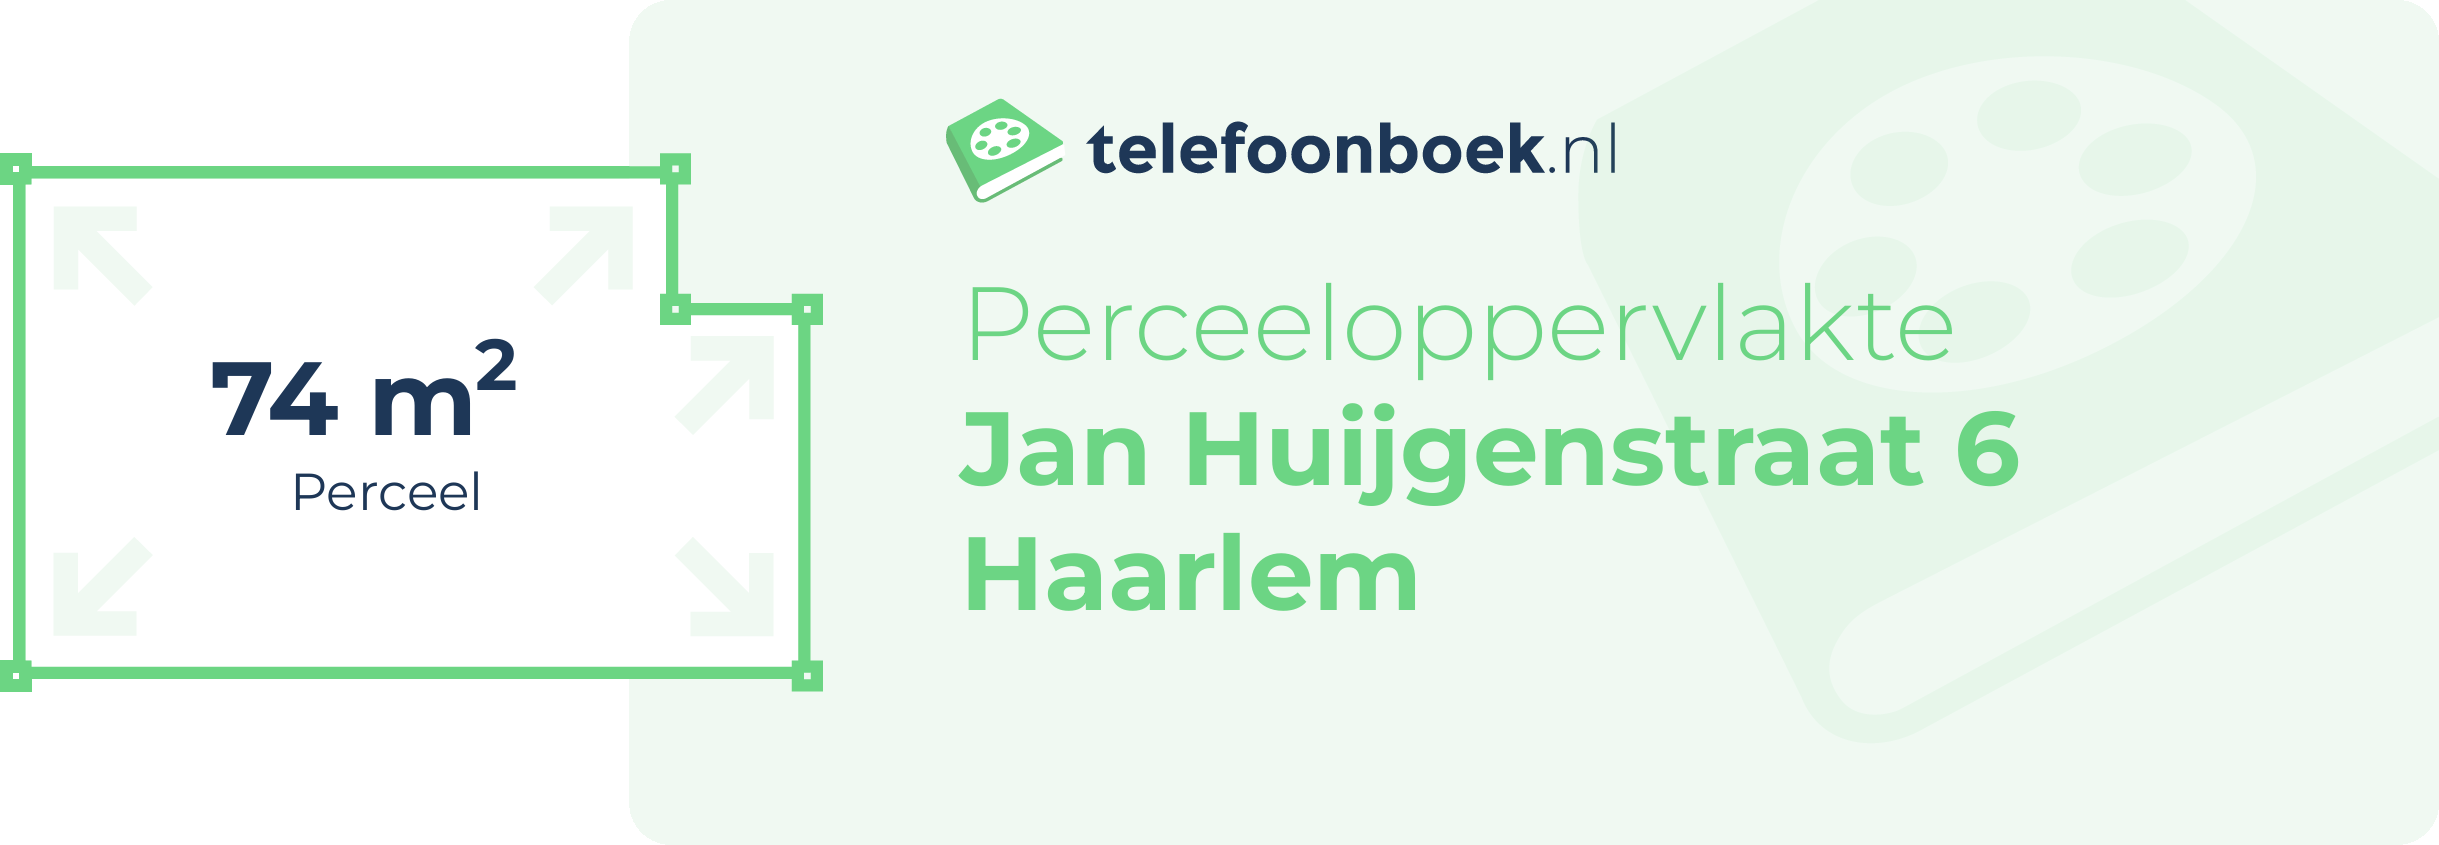 Perceeloppervlakte Jan Huijgenstraat 6 Haarlem